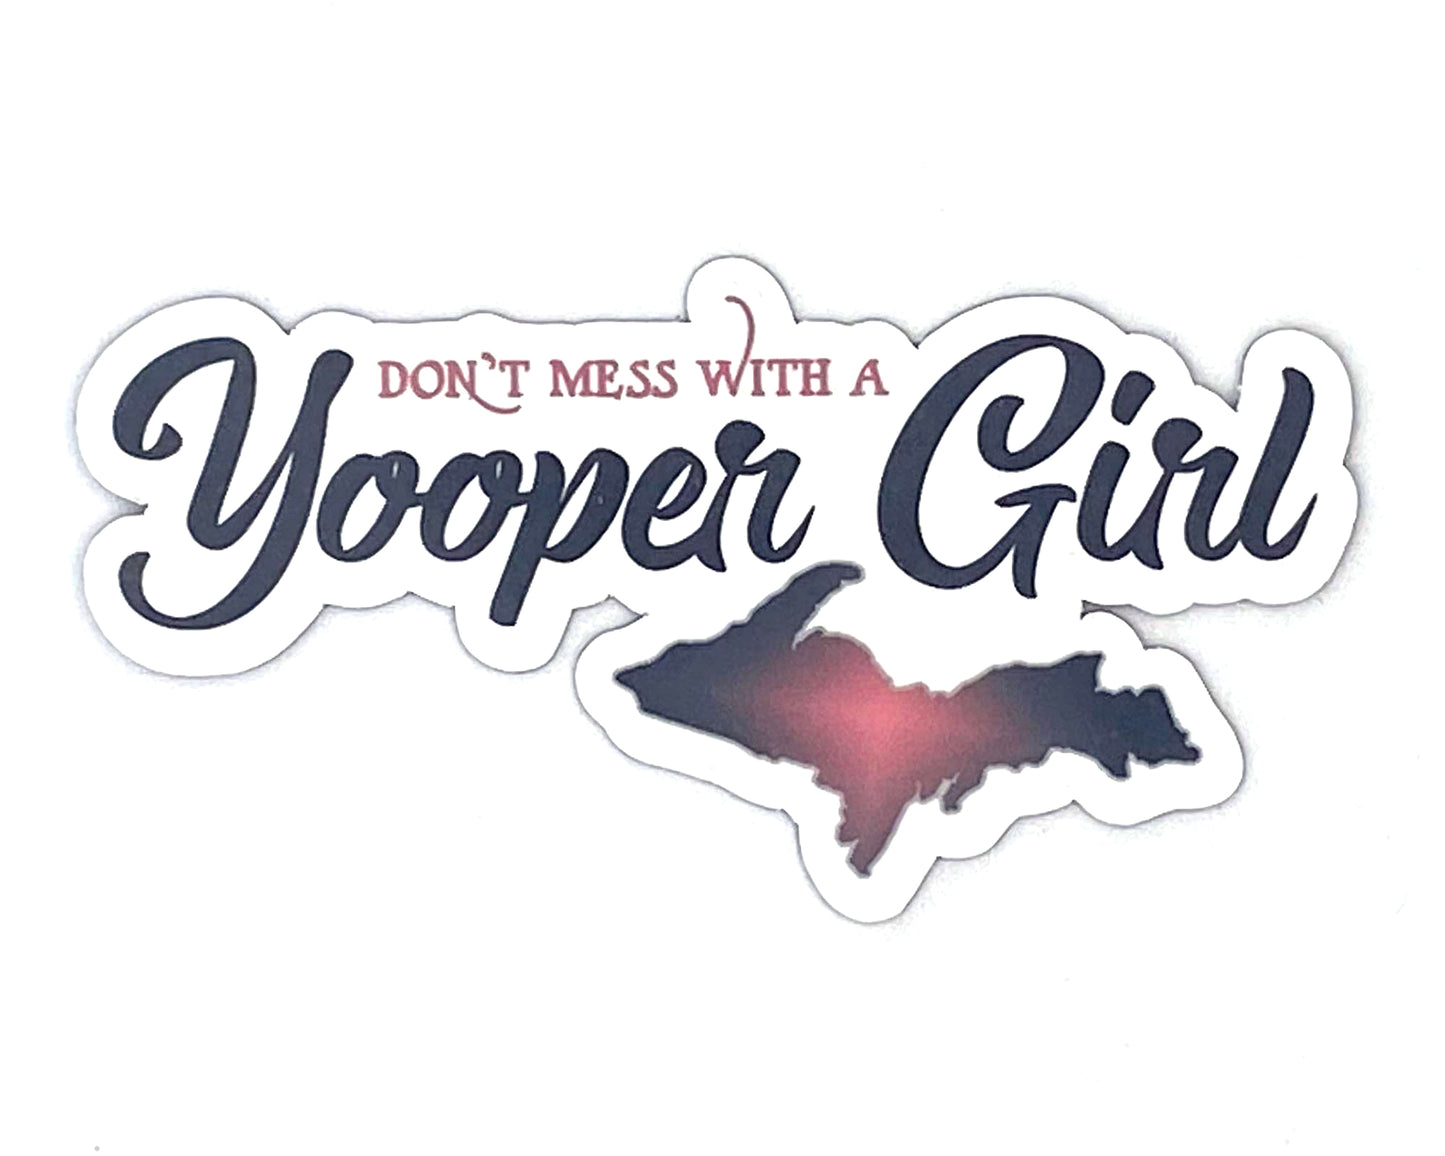 Yooper Girl Fridge Magnets, Upper Michigan Girl Magnet, Gift for Yooper Woman